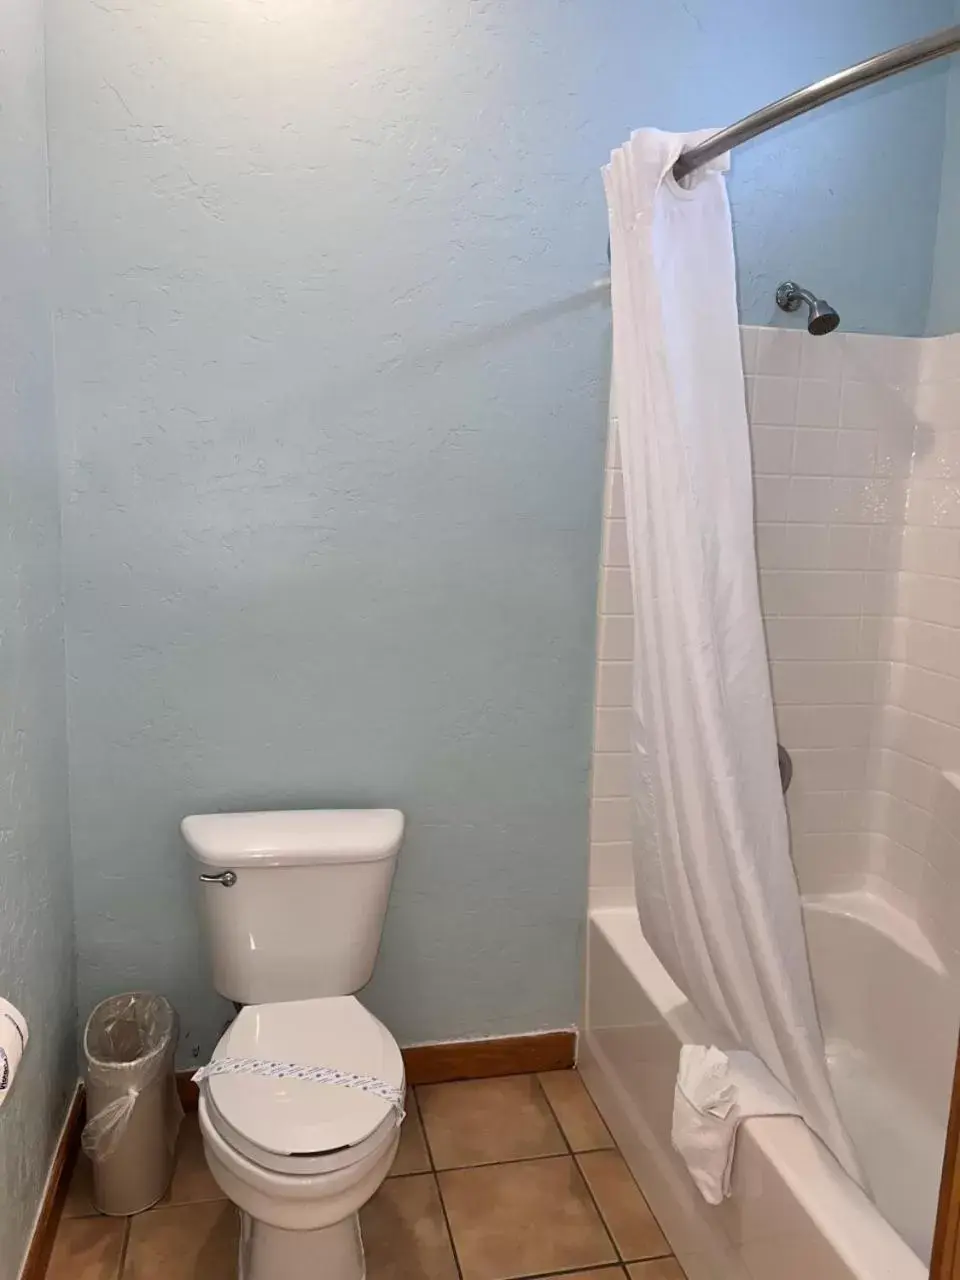 Bathroom in D&R Pelican Bay Resort